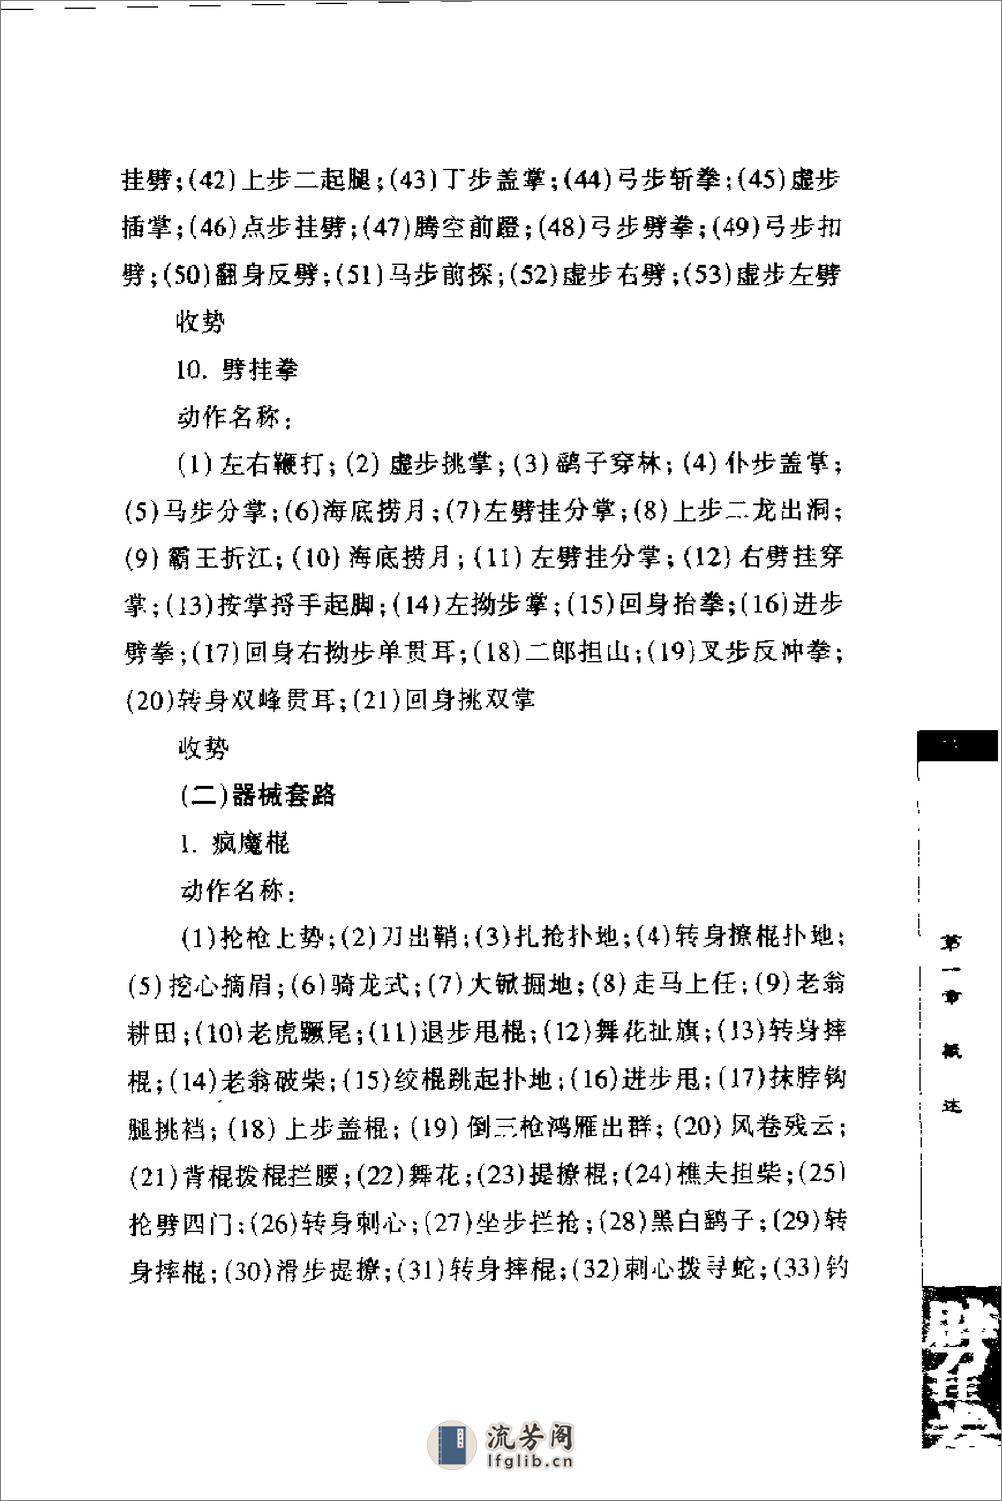 《劈挂拳》中国武术系列规定套路编写组 - 第17页预览图